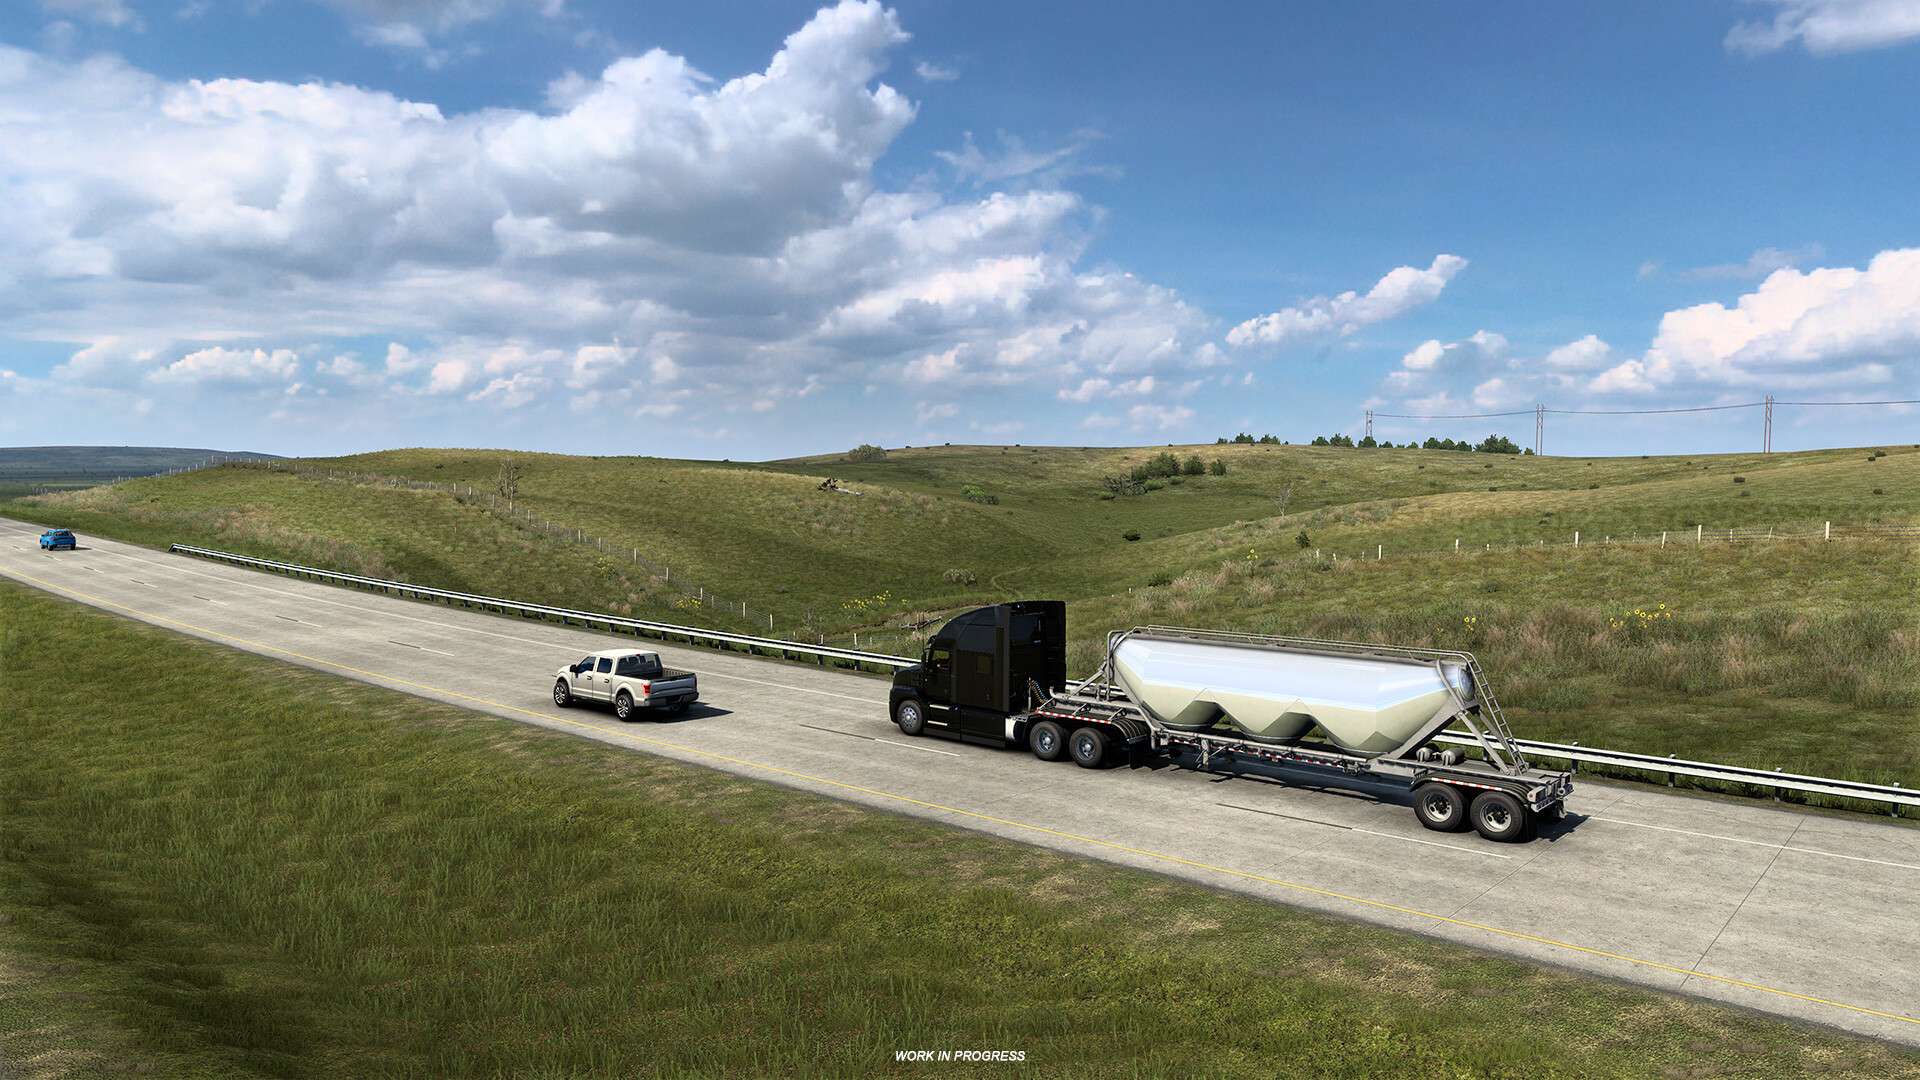 《美國卡車模擬》新DLC「堪薩斯州」 藍天草原向日葵